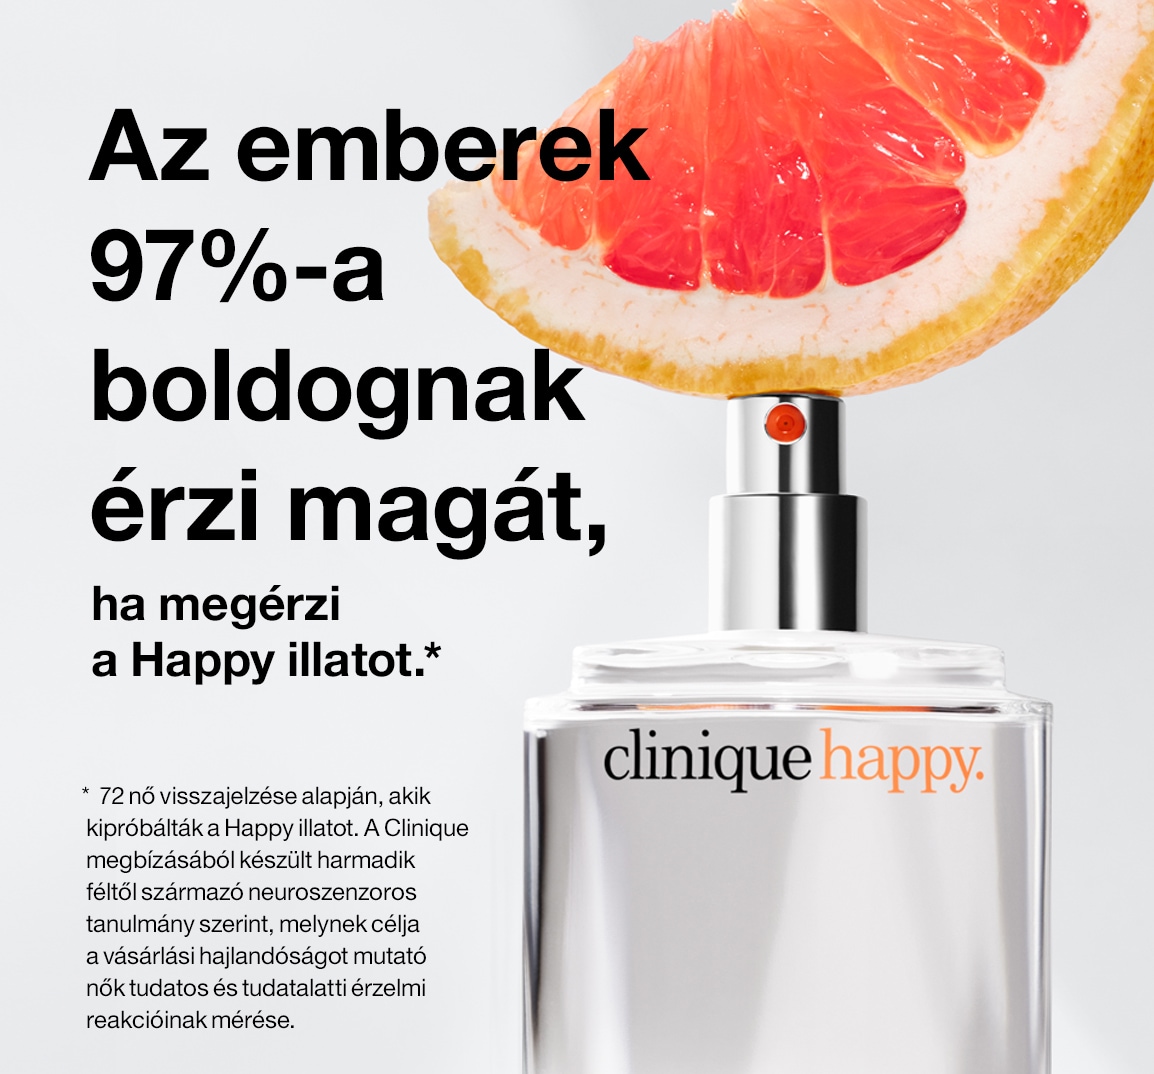 Az emberek 97%-a boldognak érzi magát, ha megérzi a Happy illatot.*